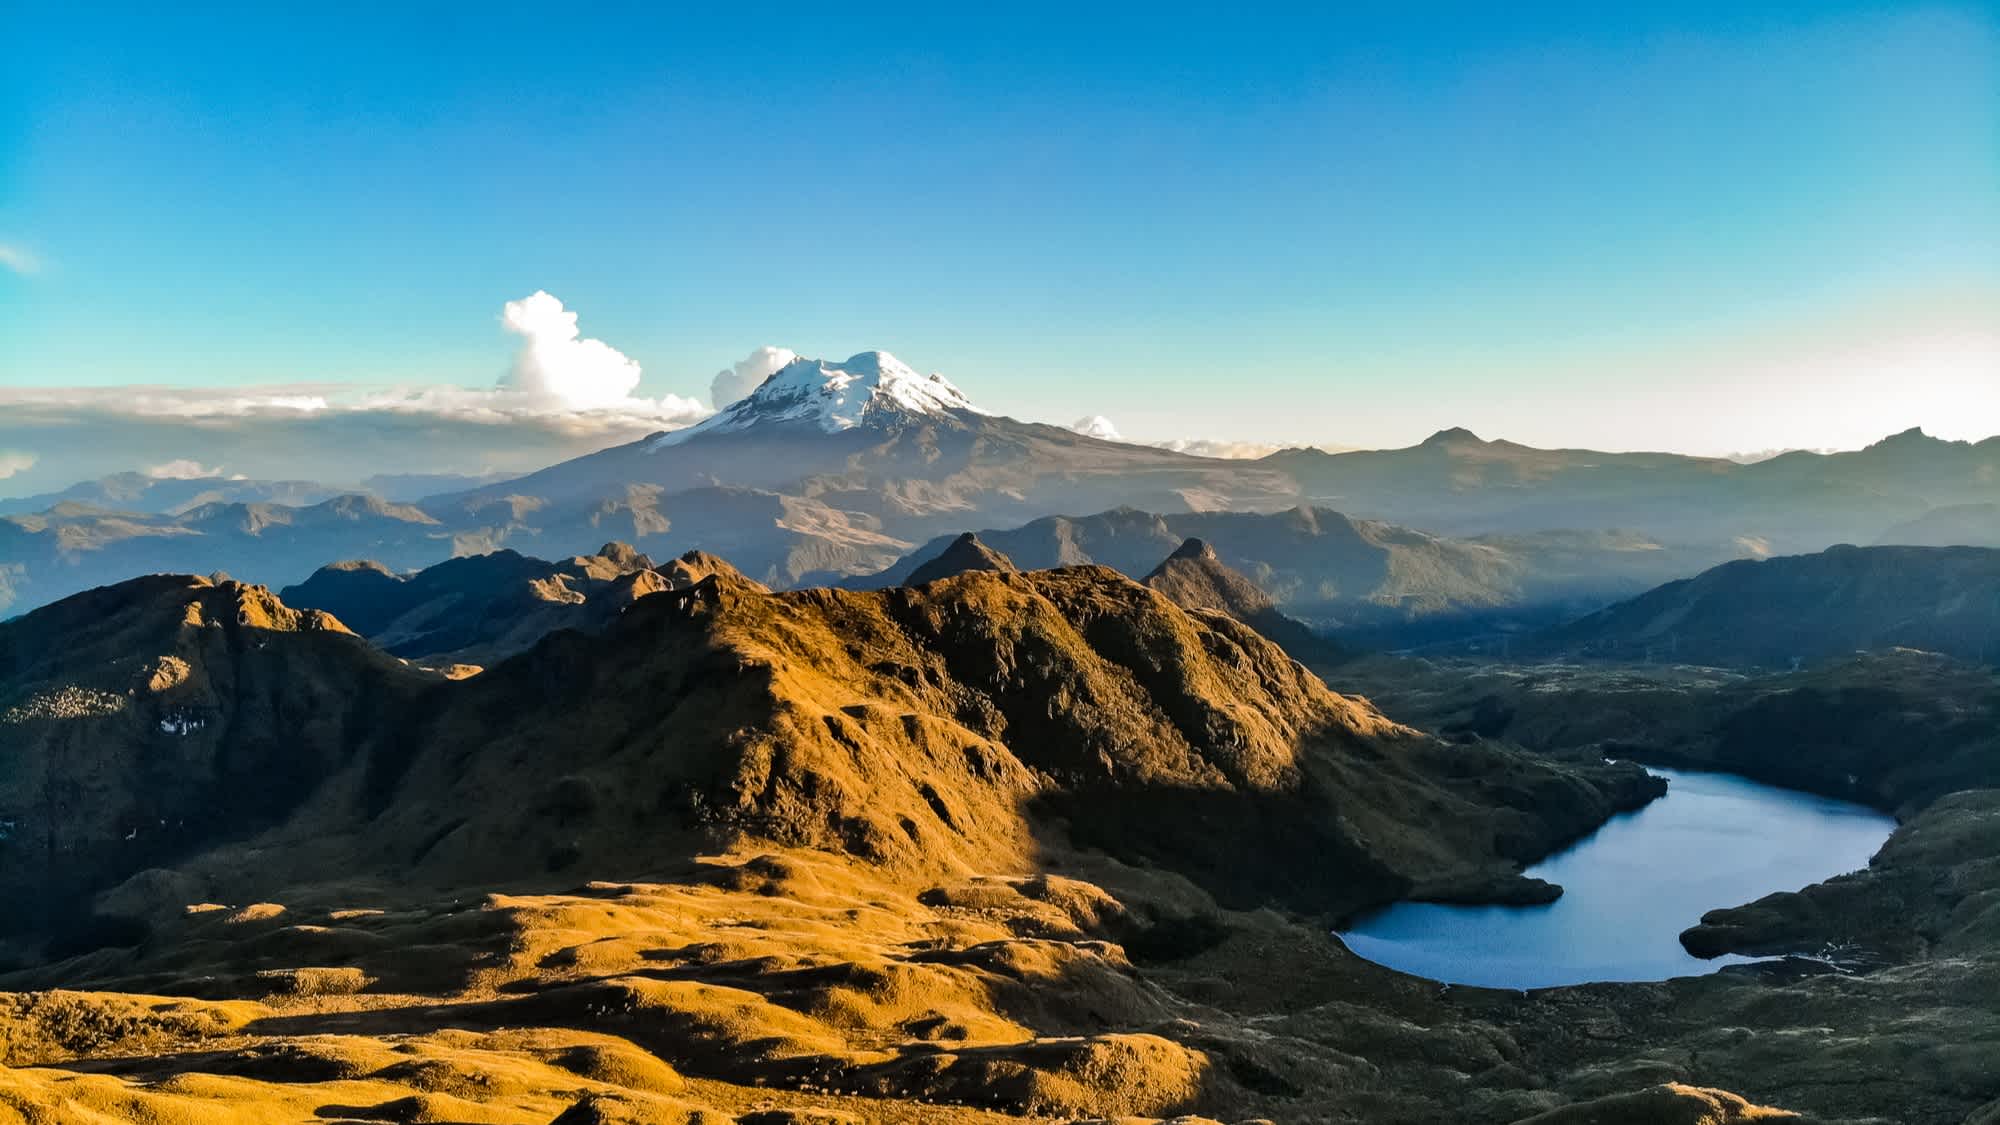 Der Vulkan Antisana in der östlichen Gebirgskette der ecuadorianischen Anden vom Cayambe Coca Reservat aus gesehen.